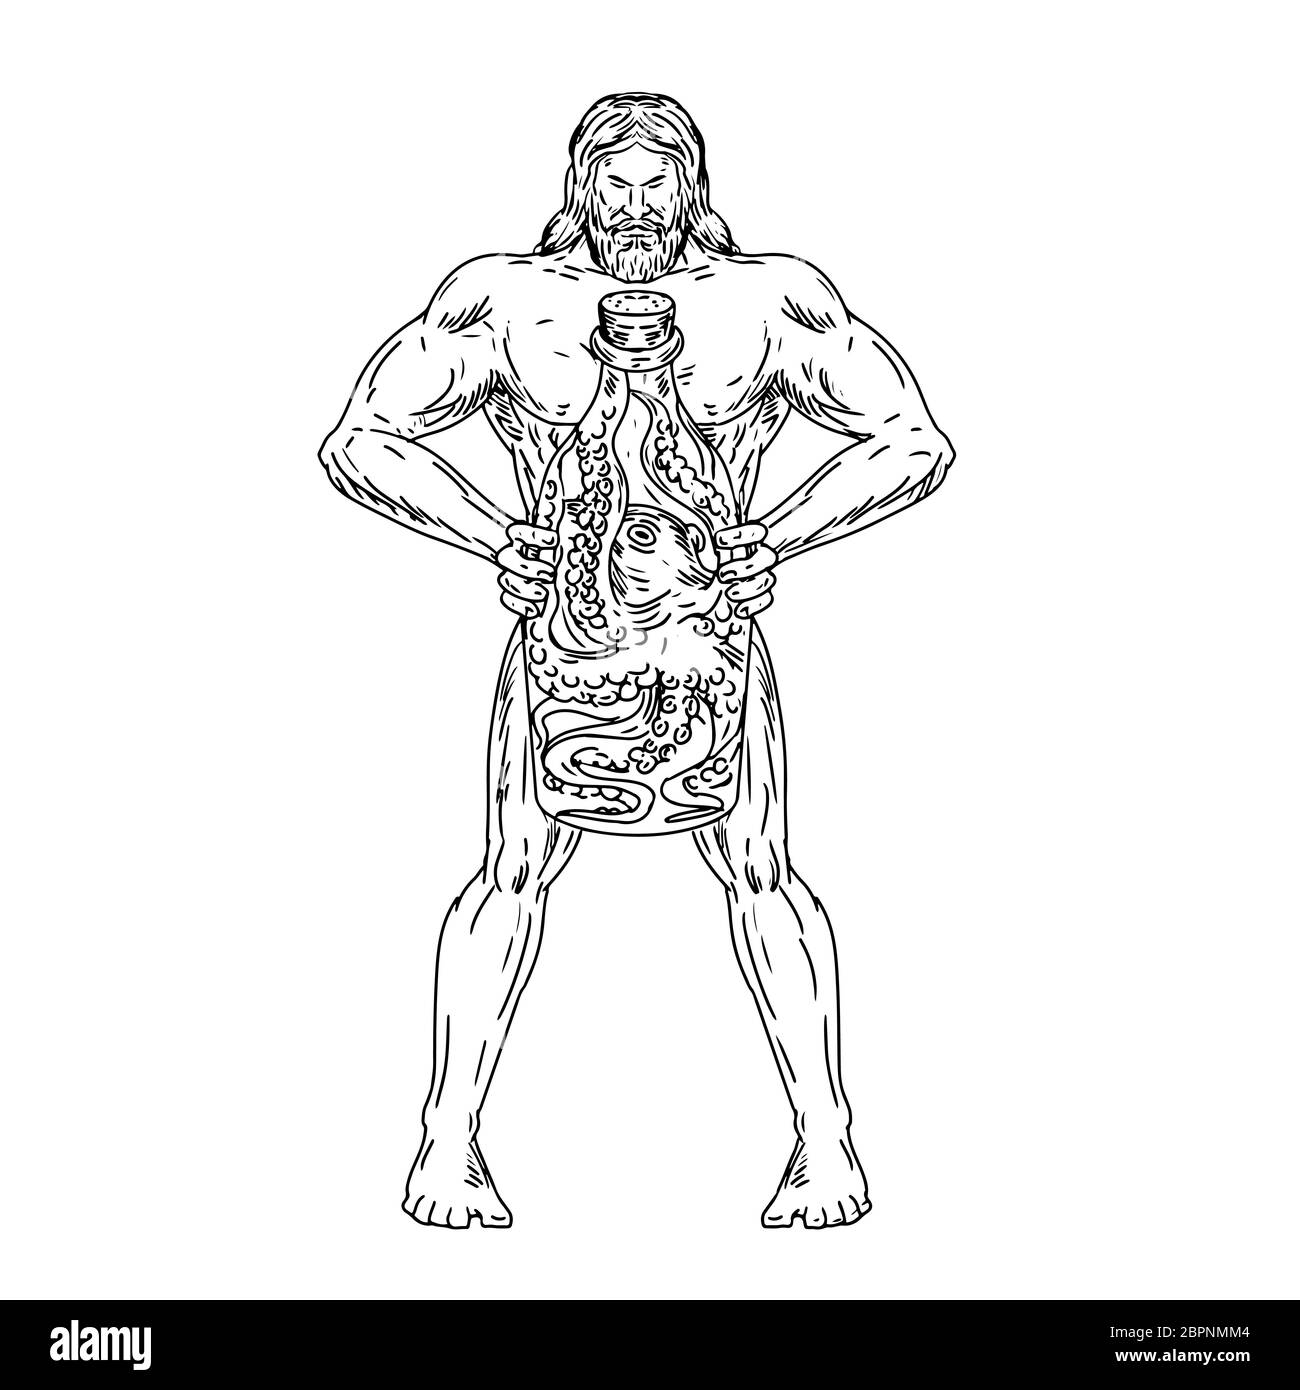 Dibujo Dibujo Ilustración estilo romano de Hercules, un héroe y dios griego equivalente al divino héroe Heracles, sosteniendo una botella con un pulpo dentro Foto de stock